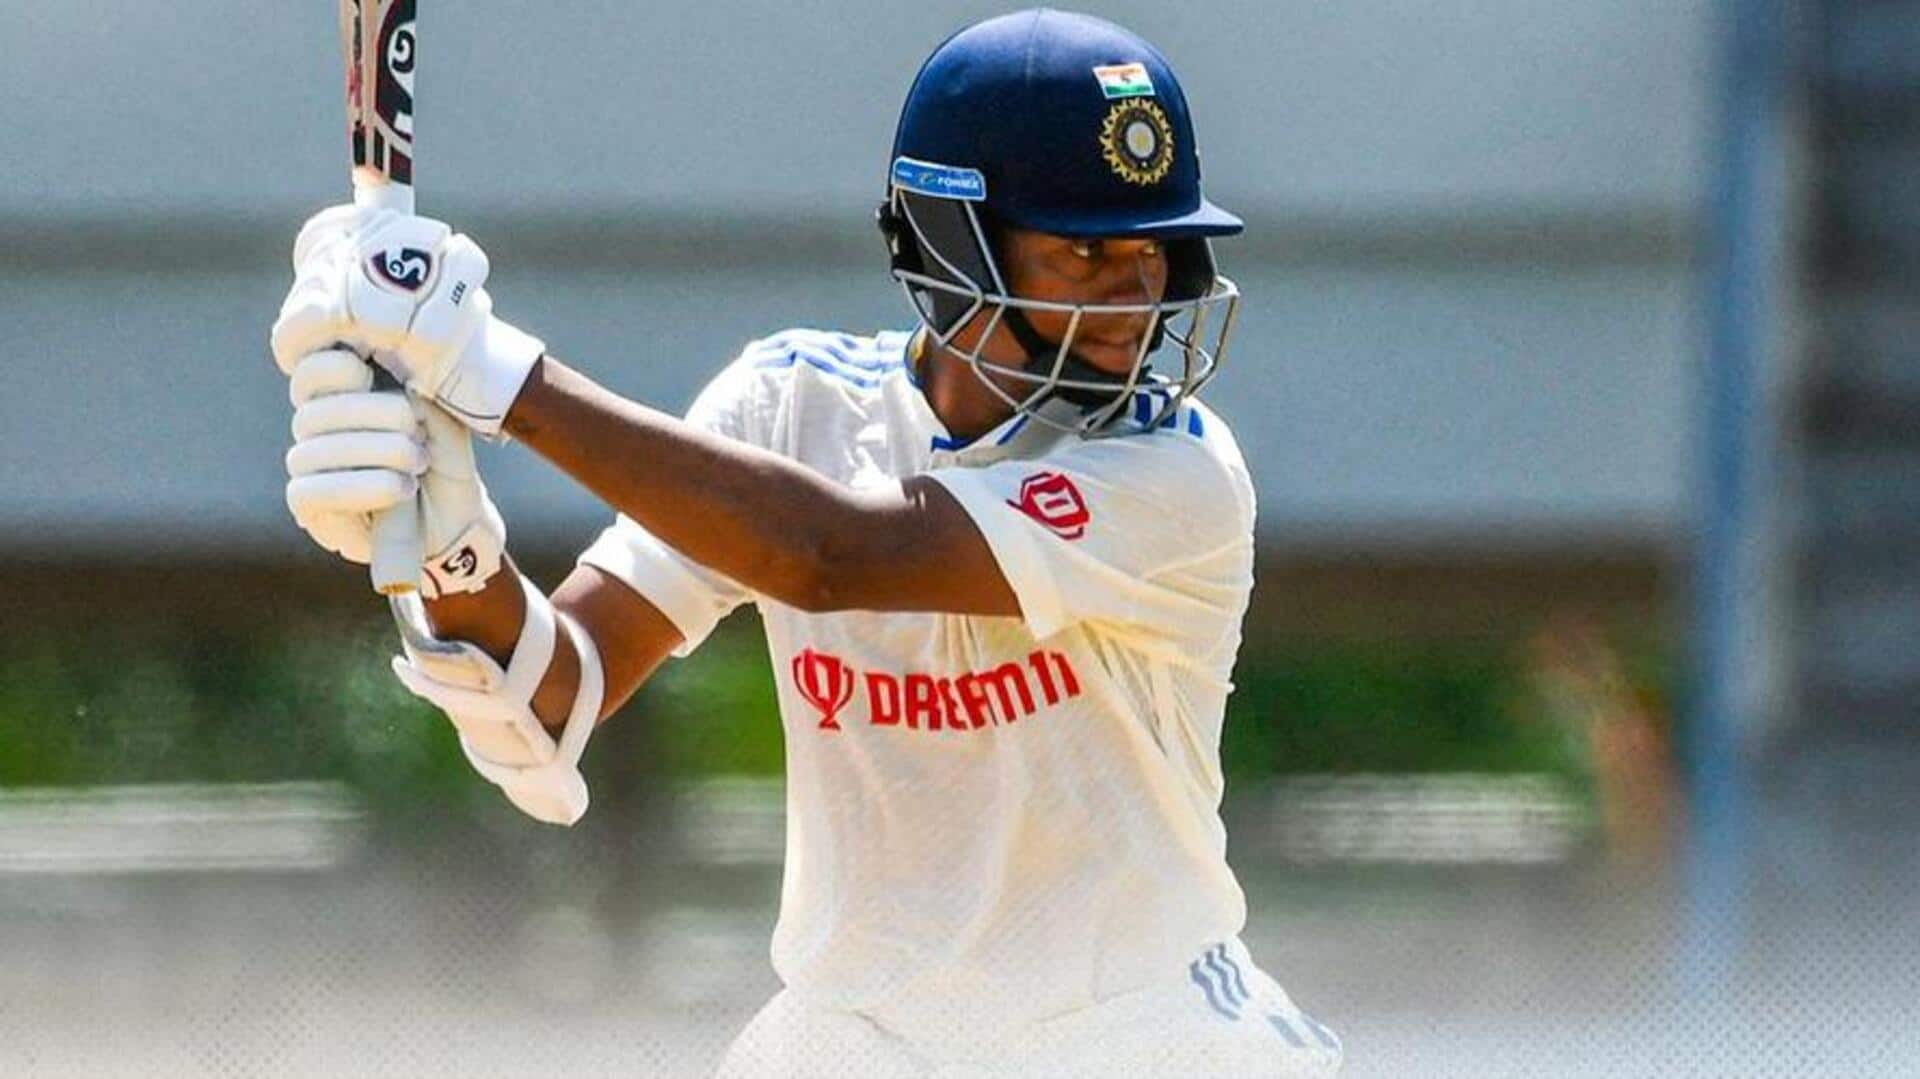 यशस्वी जायसवाल डेब्यू टेस्ट में सर्वाधिक गेंदों का सामना करने वाले भारतीय बल्लेबाज बने, जानिए आंकड़े